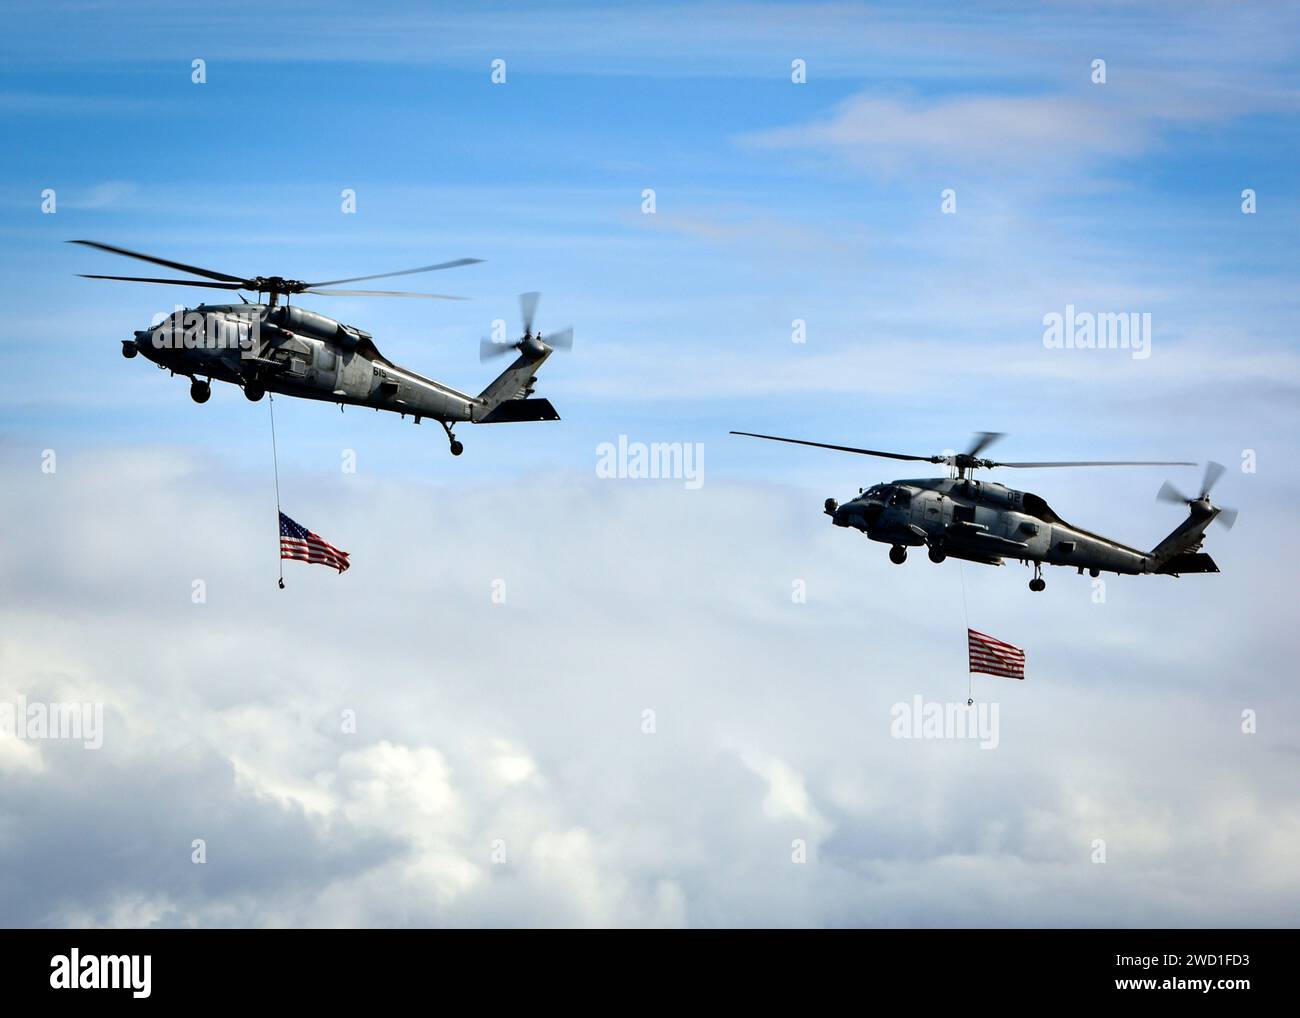 Ein MH-60S Sea Hawk und ein MH-60R Sea Hawk während einer Flugvorführung. Stockfoto